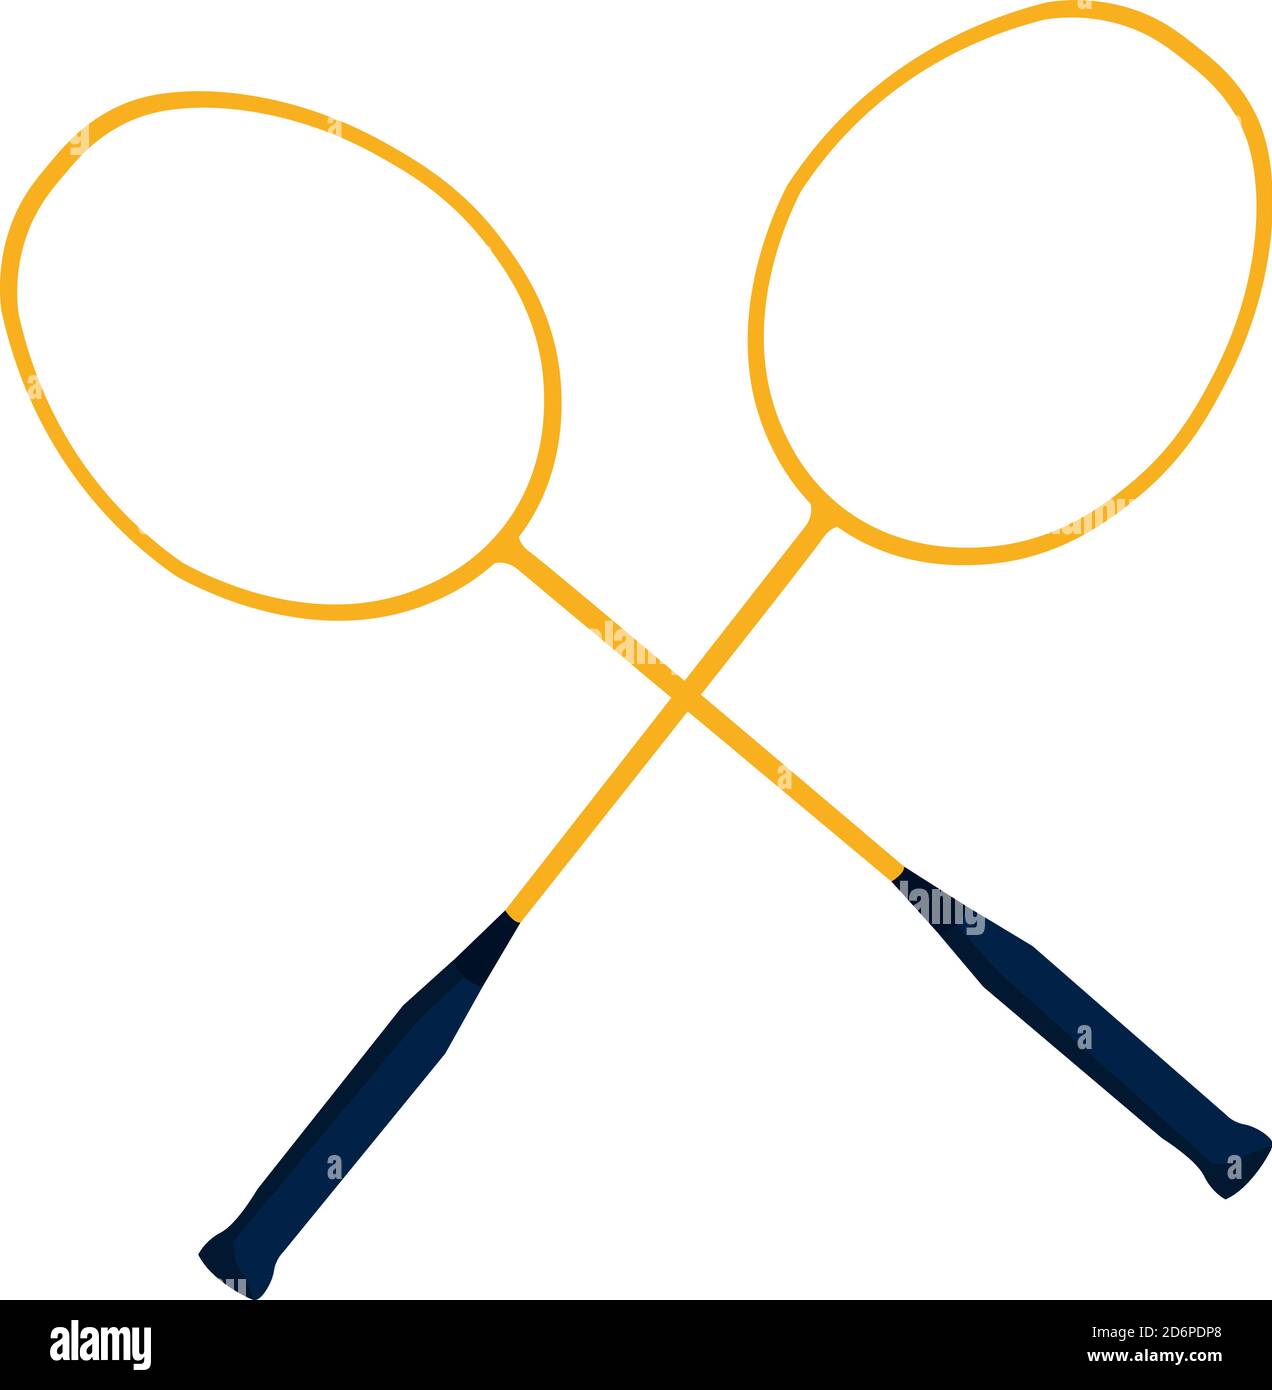 Raquettes de badminton, illustration, vecteur sur fond blanc Illustration de Vecteur